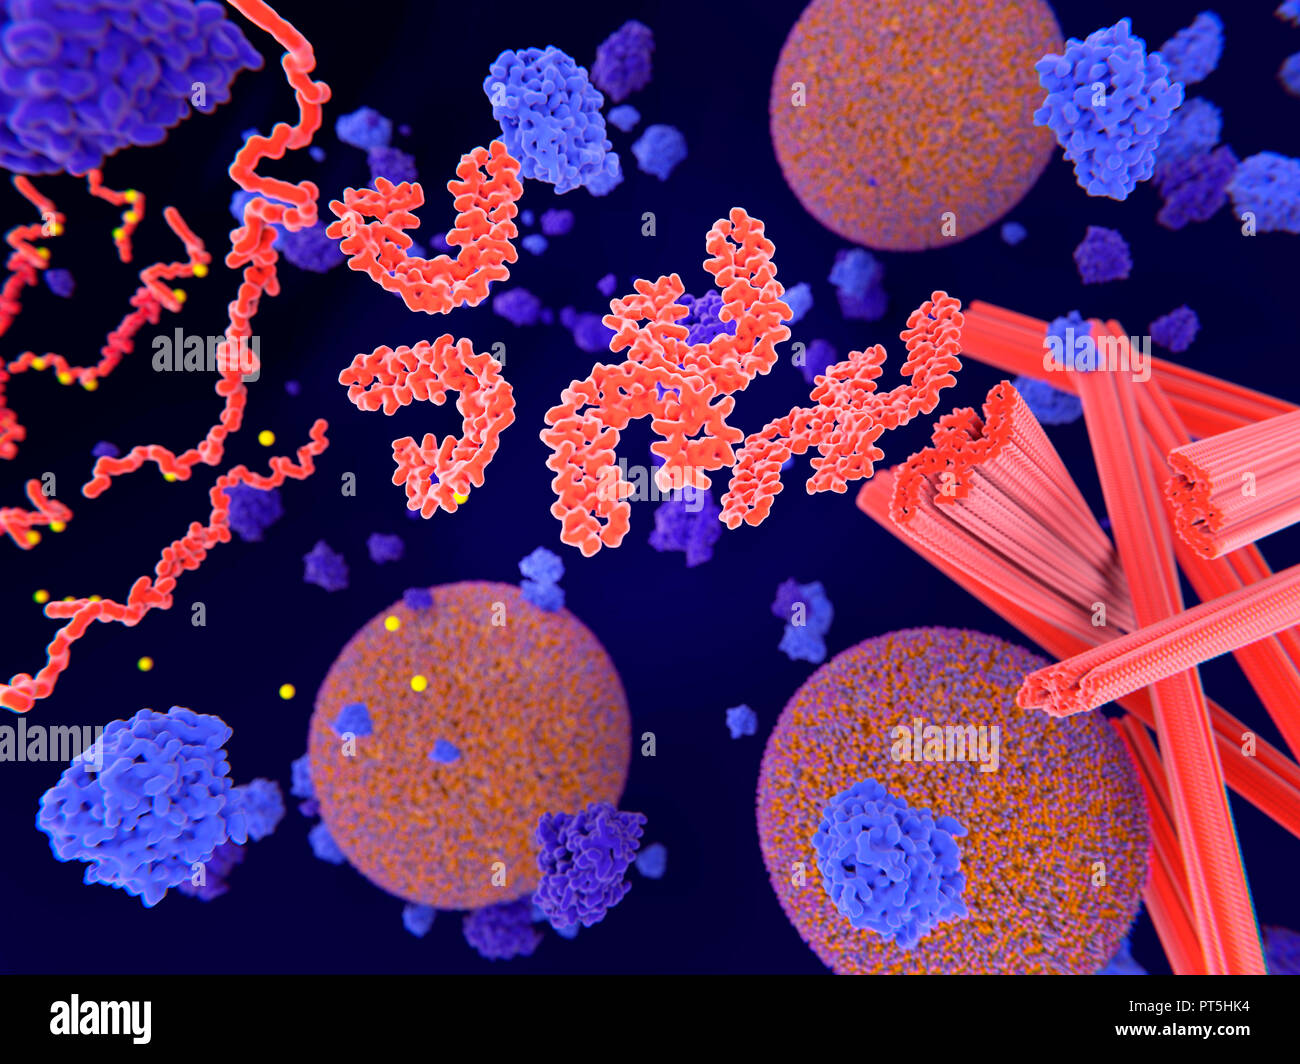 La proteina tau nella malattia di Alzheimer,illustrazione.fosforilazione patologica (giallo) di proteine Tau (rosso-arancione) mediante chinasi (blu-viola) influenzare le cellule nervose in quello che è chiamato un grovigli neurofibrillari.Questa illustrazione mostra il trasporto di vescicole sinaptiche (arancione-Blu sfere) essendo interrotto.Le proteine tau interessano anche microtubles (rosso cilindri).Un grovigli neurofibrillari consiste di anormali aggregati e le fibre insolubili della proteina tau.La proteina Tau è un abbondante proteina neurale,le aggregazioni dei quali sono pensati per giocare un ruolo nella malattia di Alzheimer e altri disturbi neurali. Foto Stock